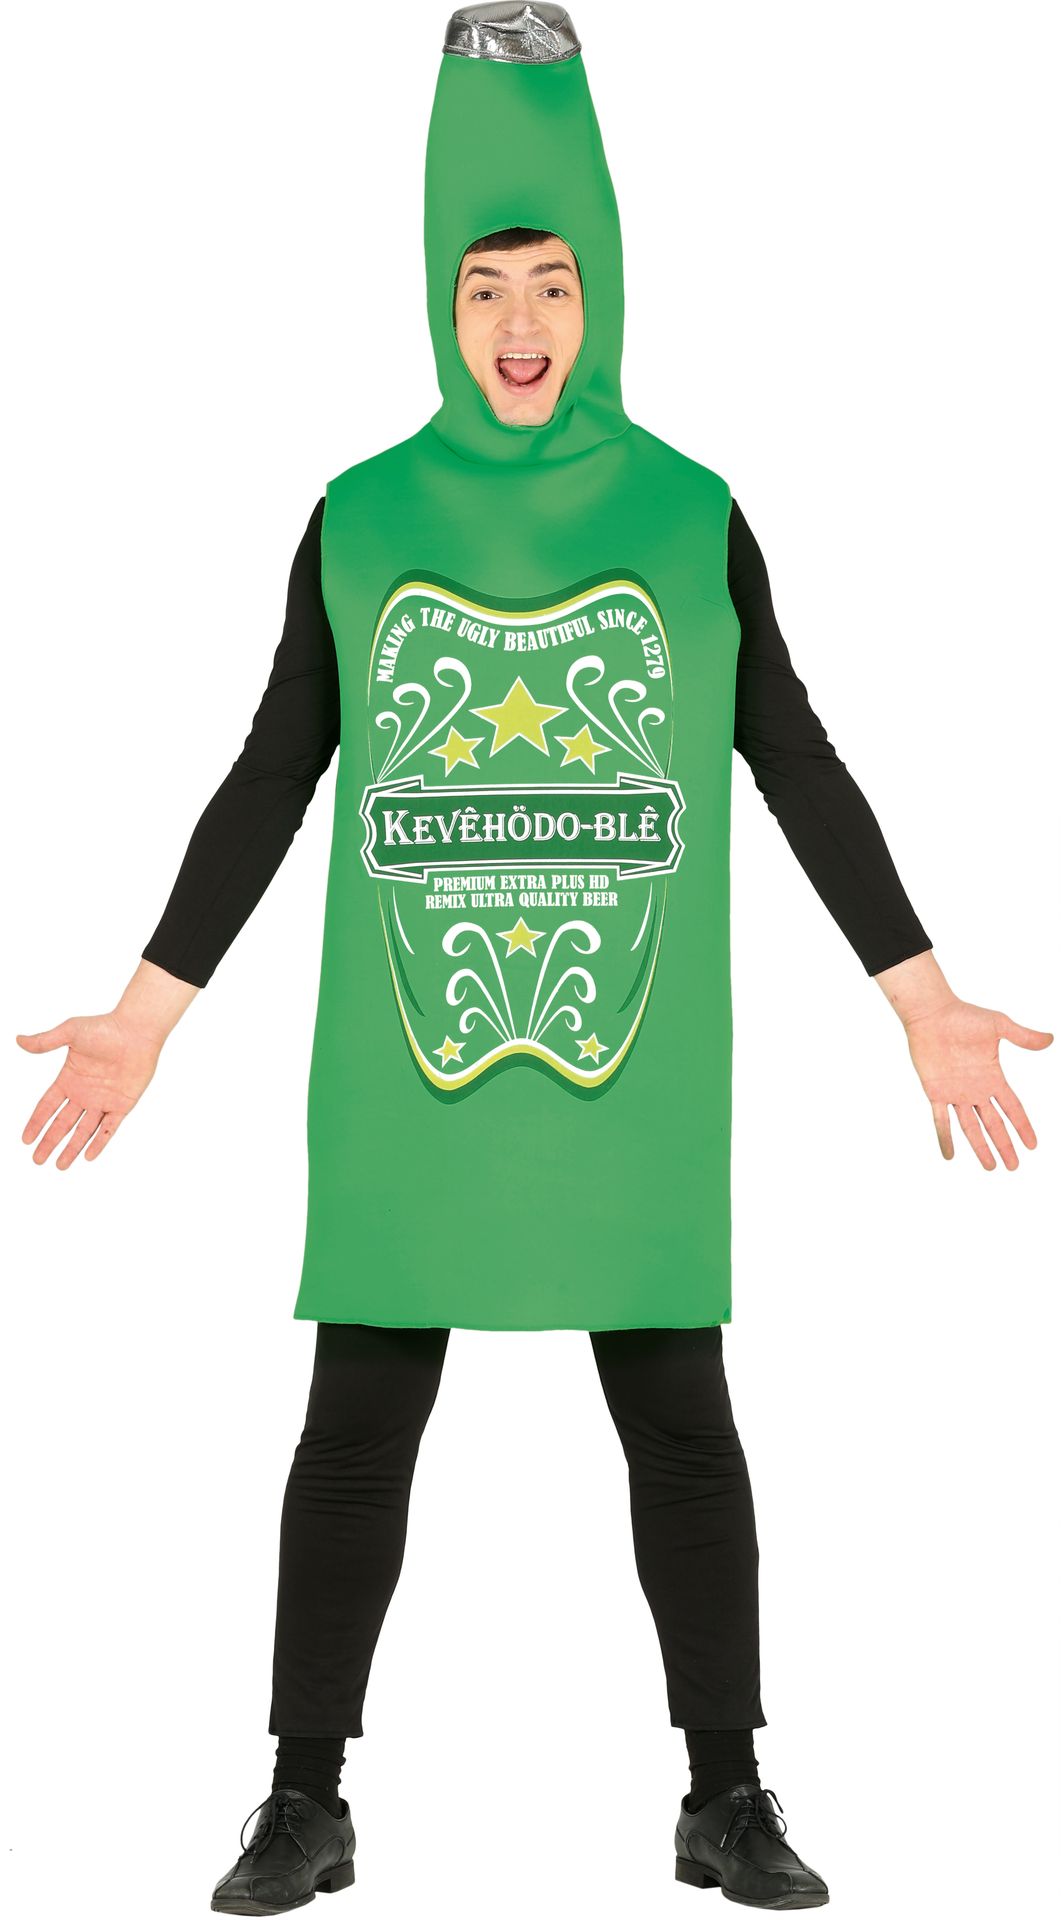 Groen bierflesje kostuum